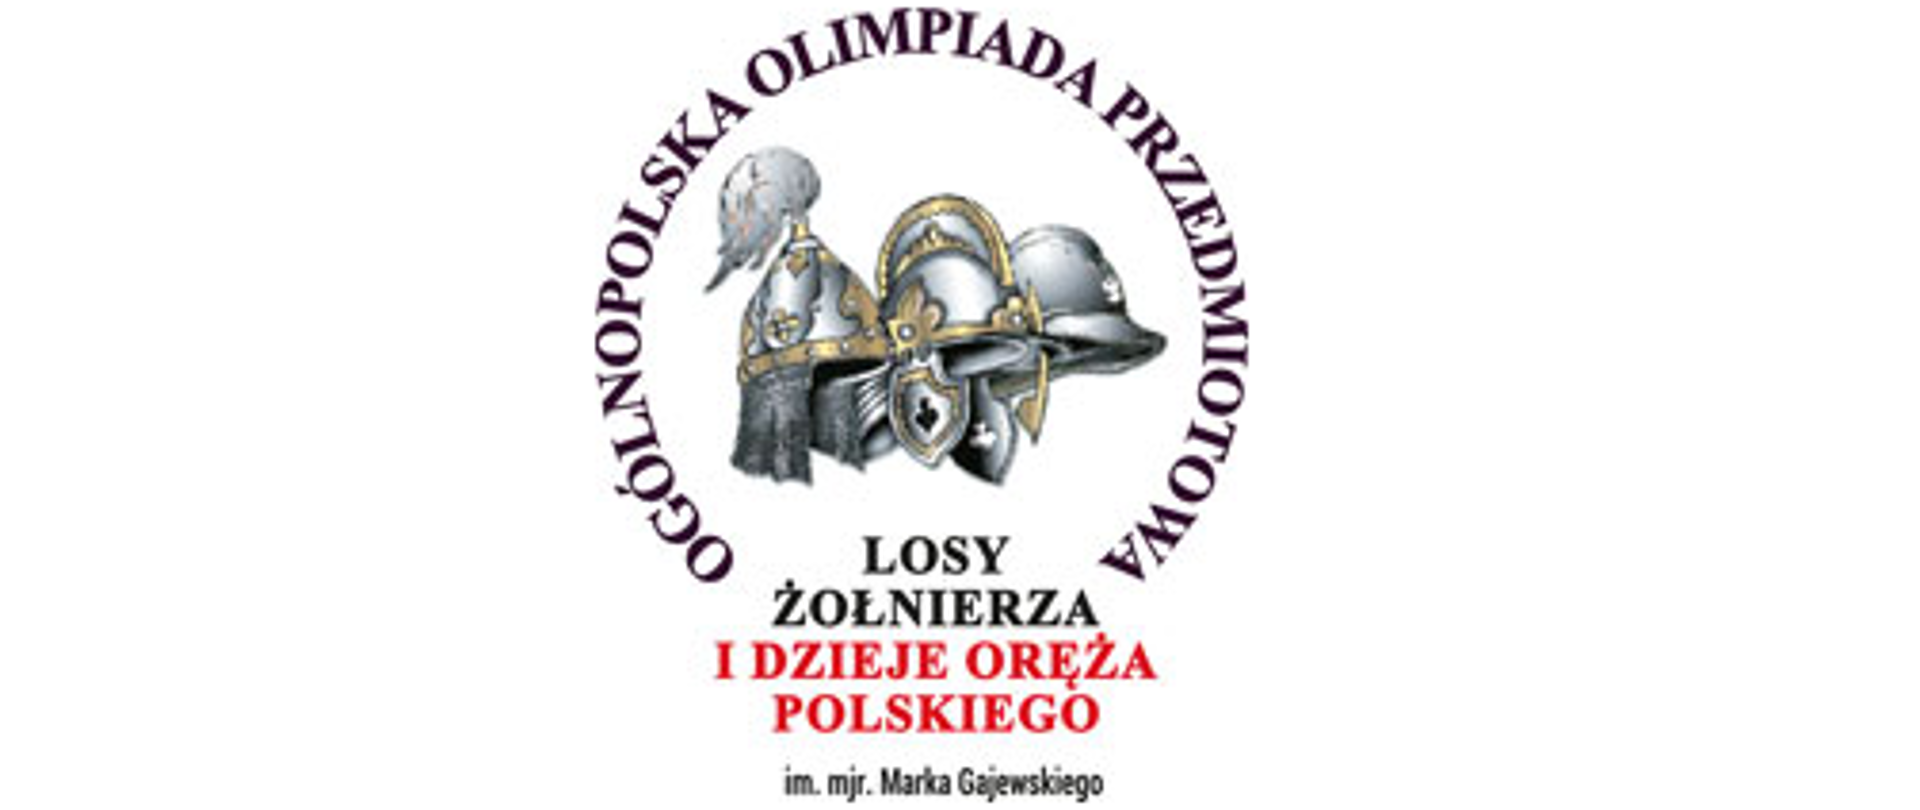 Olimpiada Losy Żołnierza i Dzieje Oręża Polskiego - logo